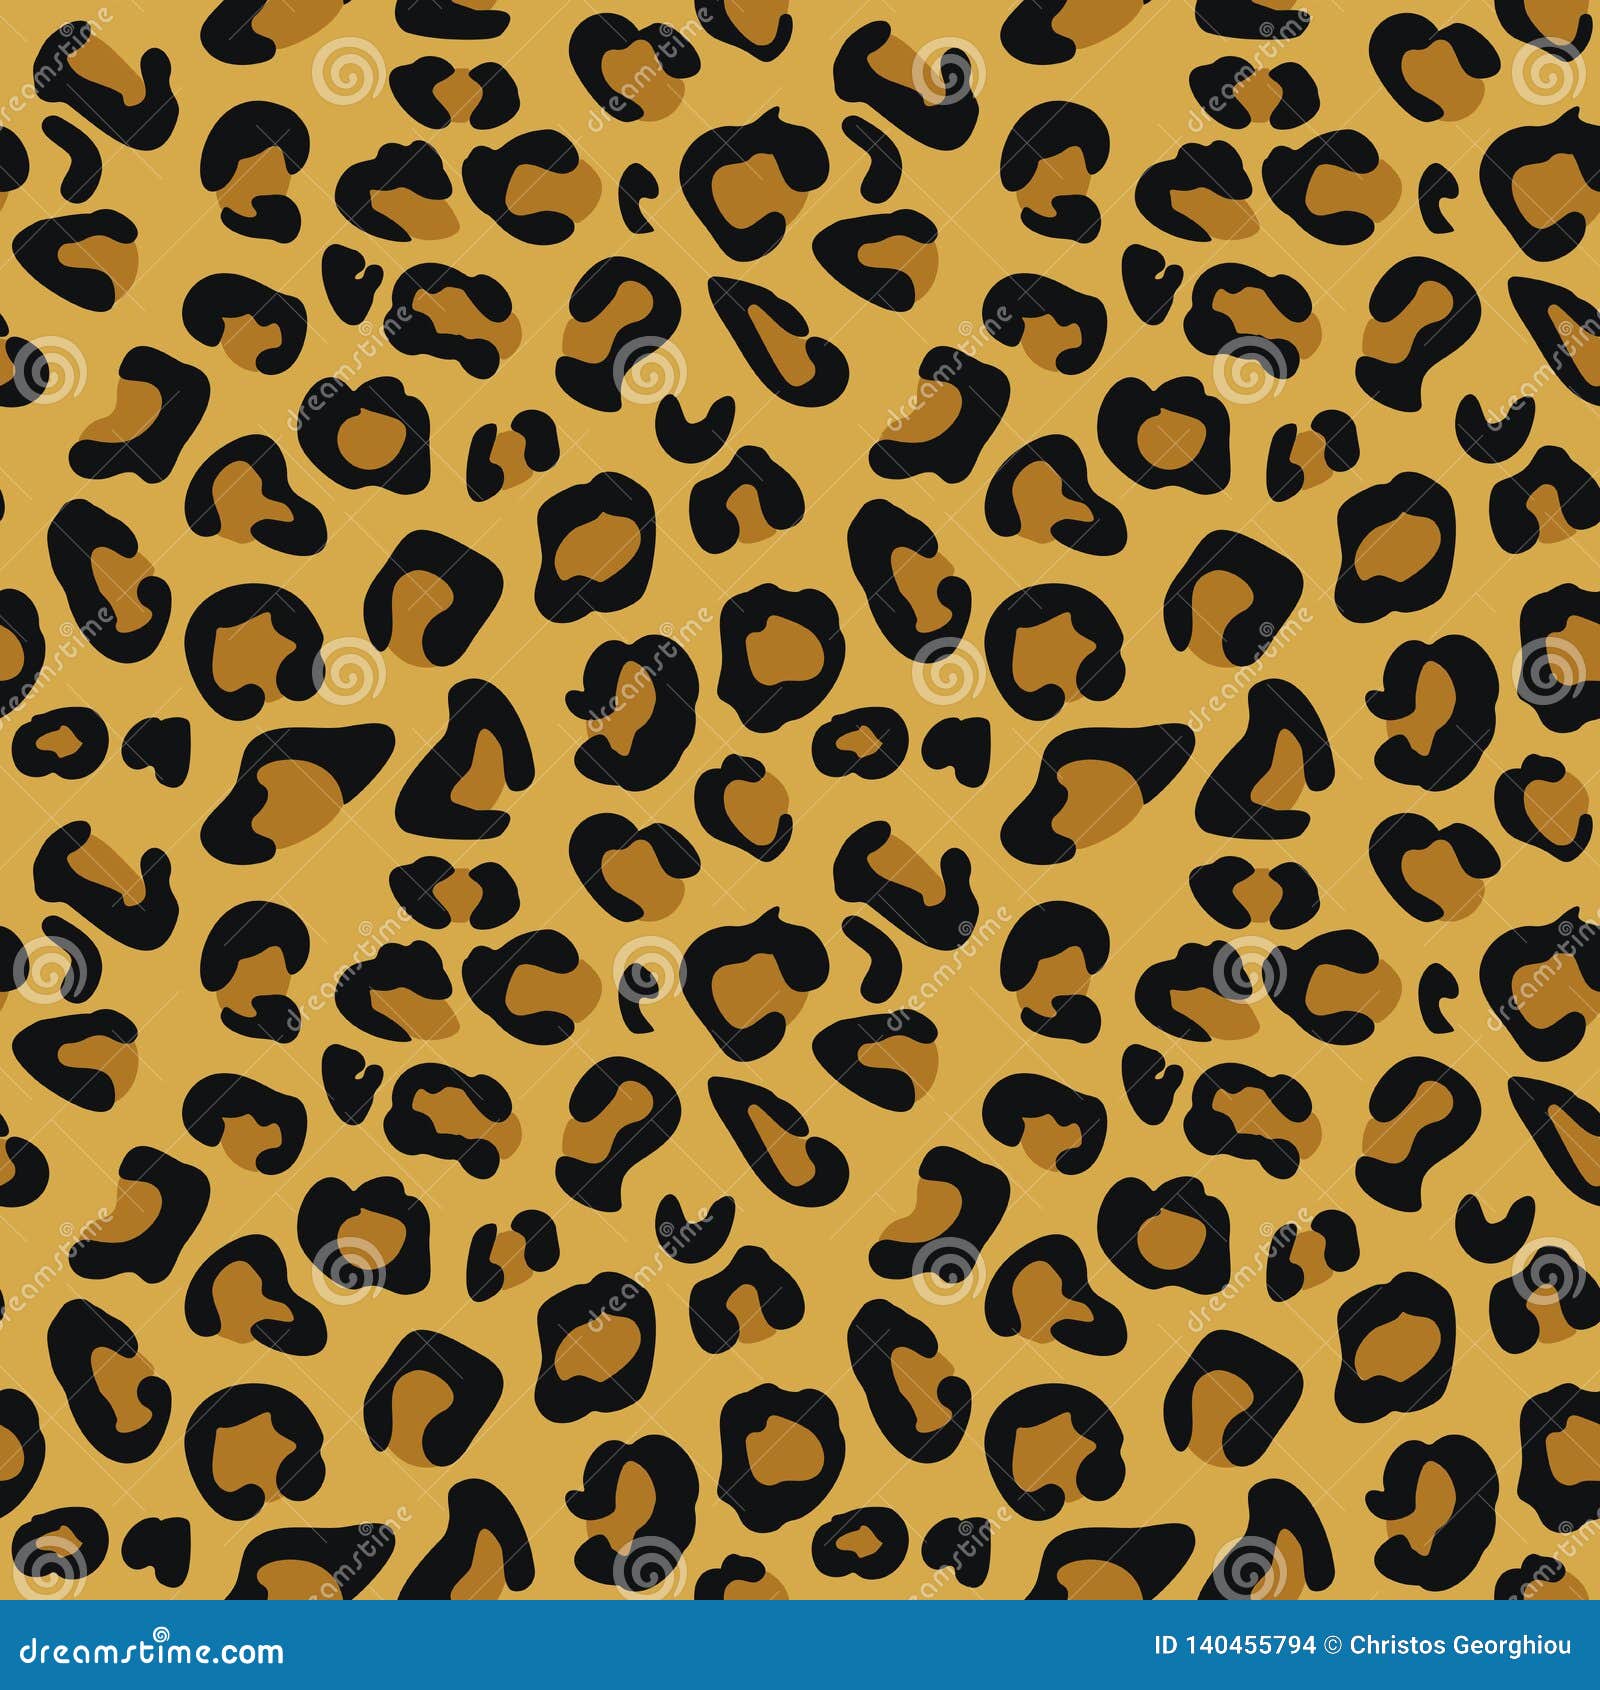 cheetah animal print pattern seamless tile